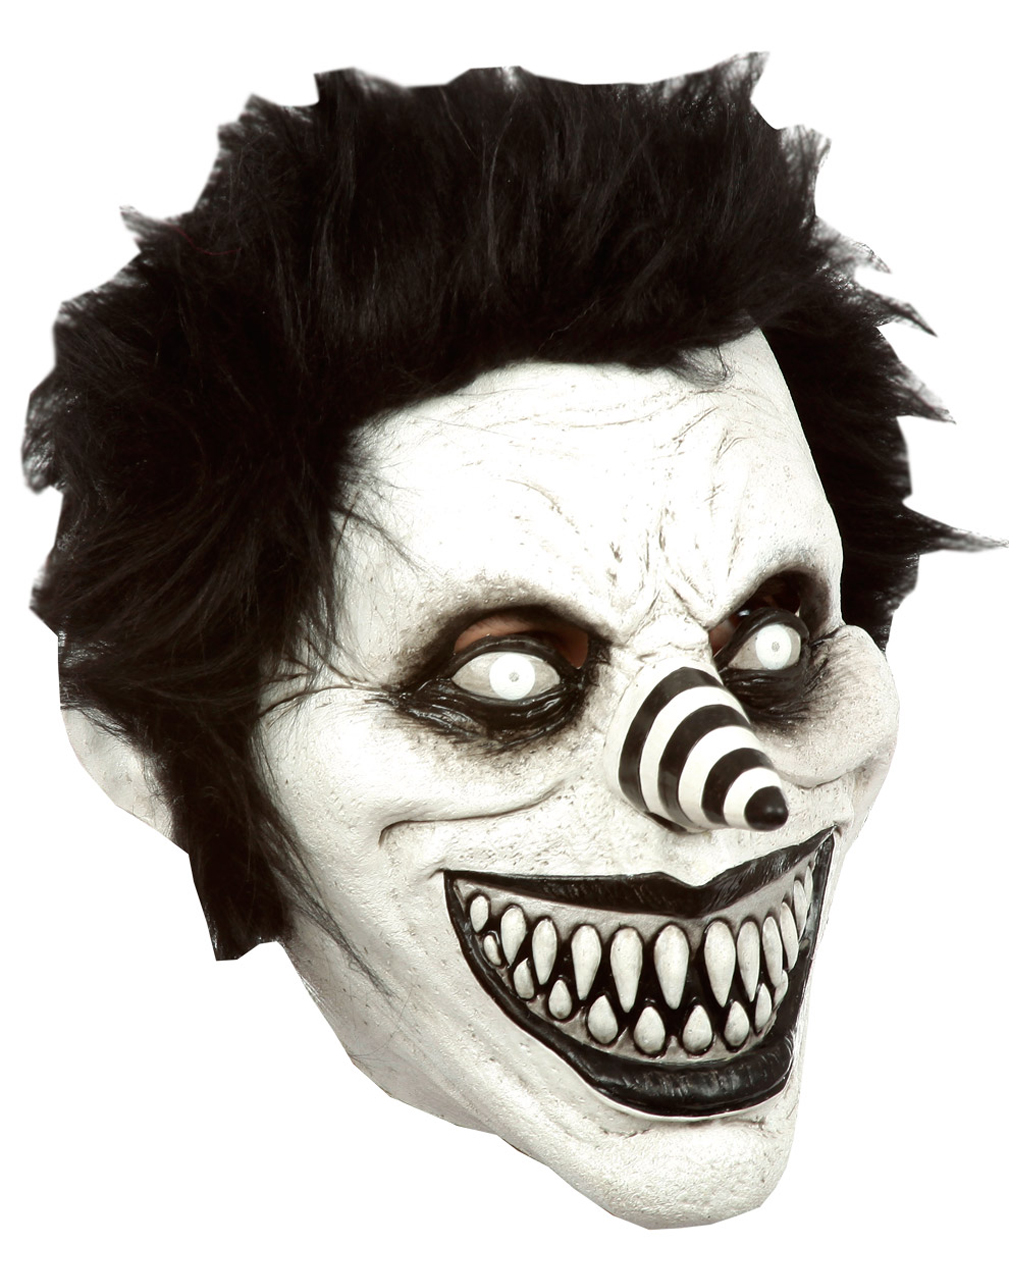 Grinsender Jack Horrorclown Maske für Halloween von Horror-Shop.com